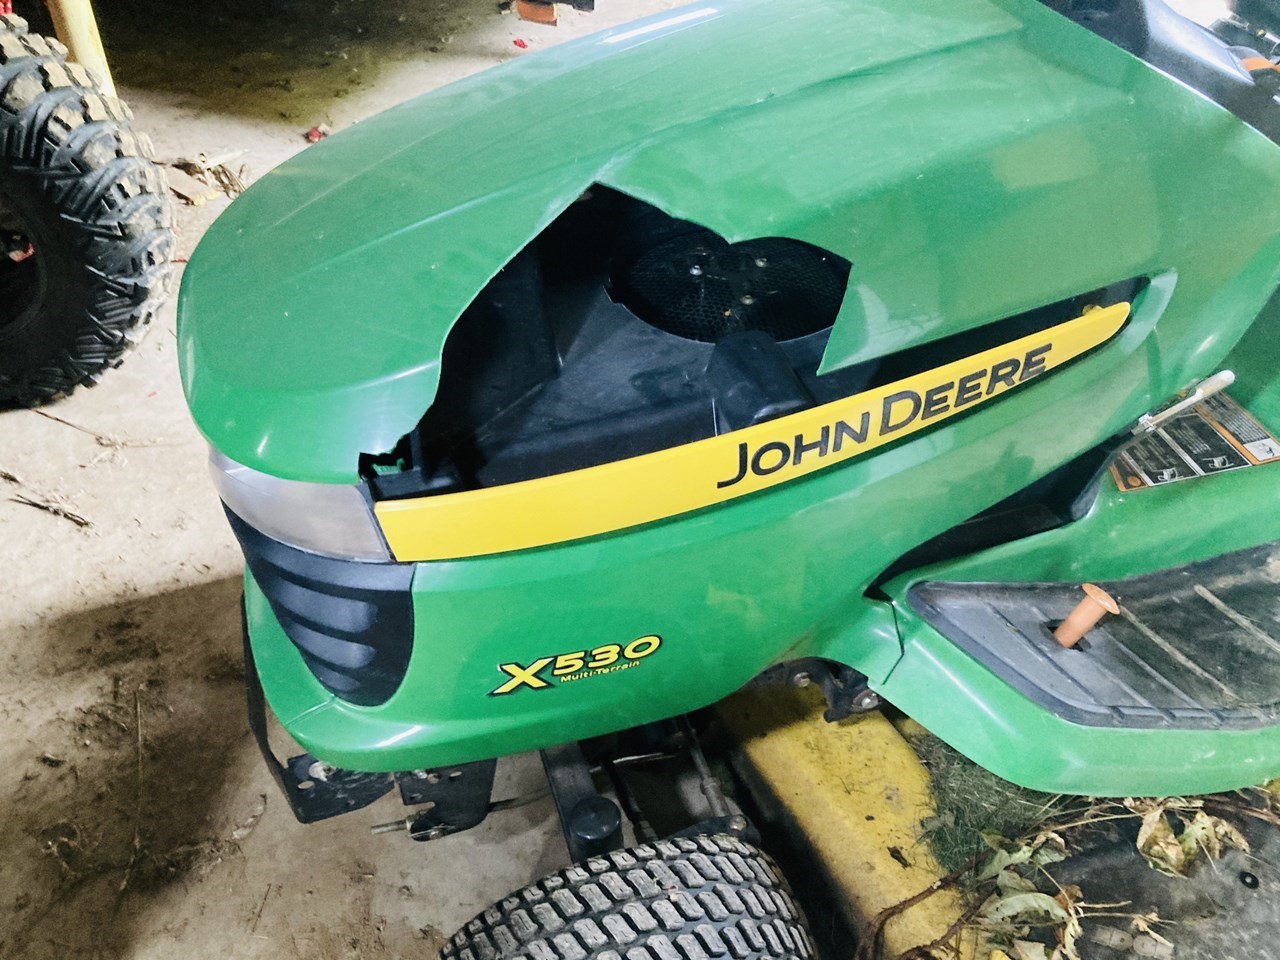 2010 John Deere X530 Lawn Mower For Sale